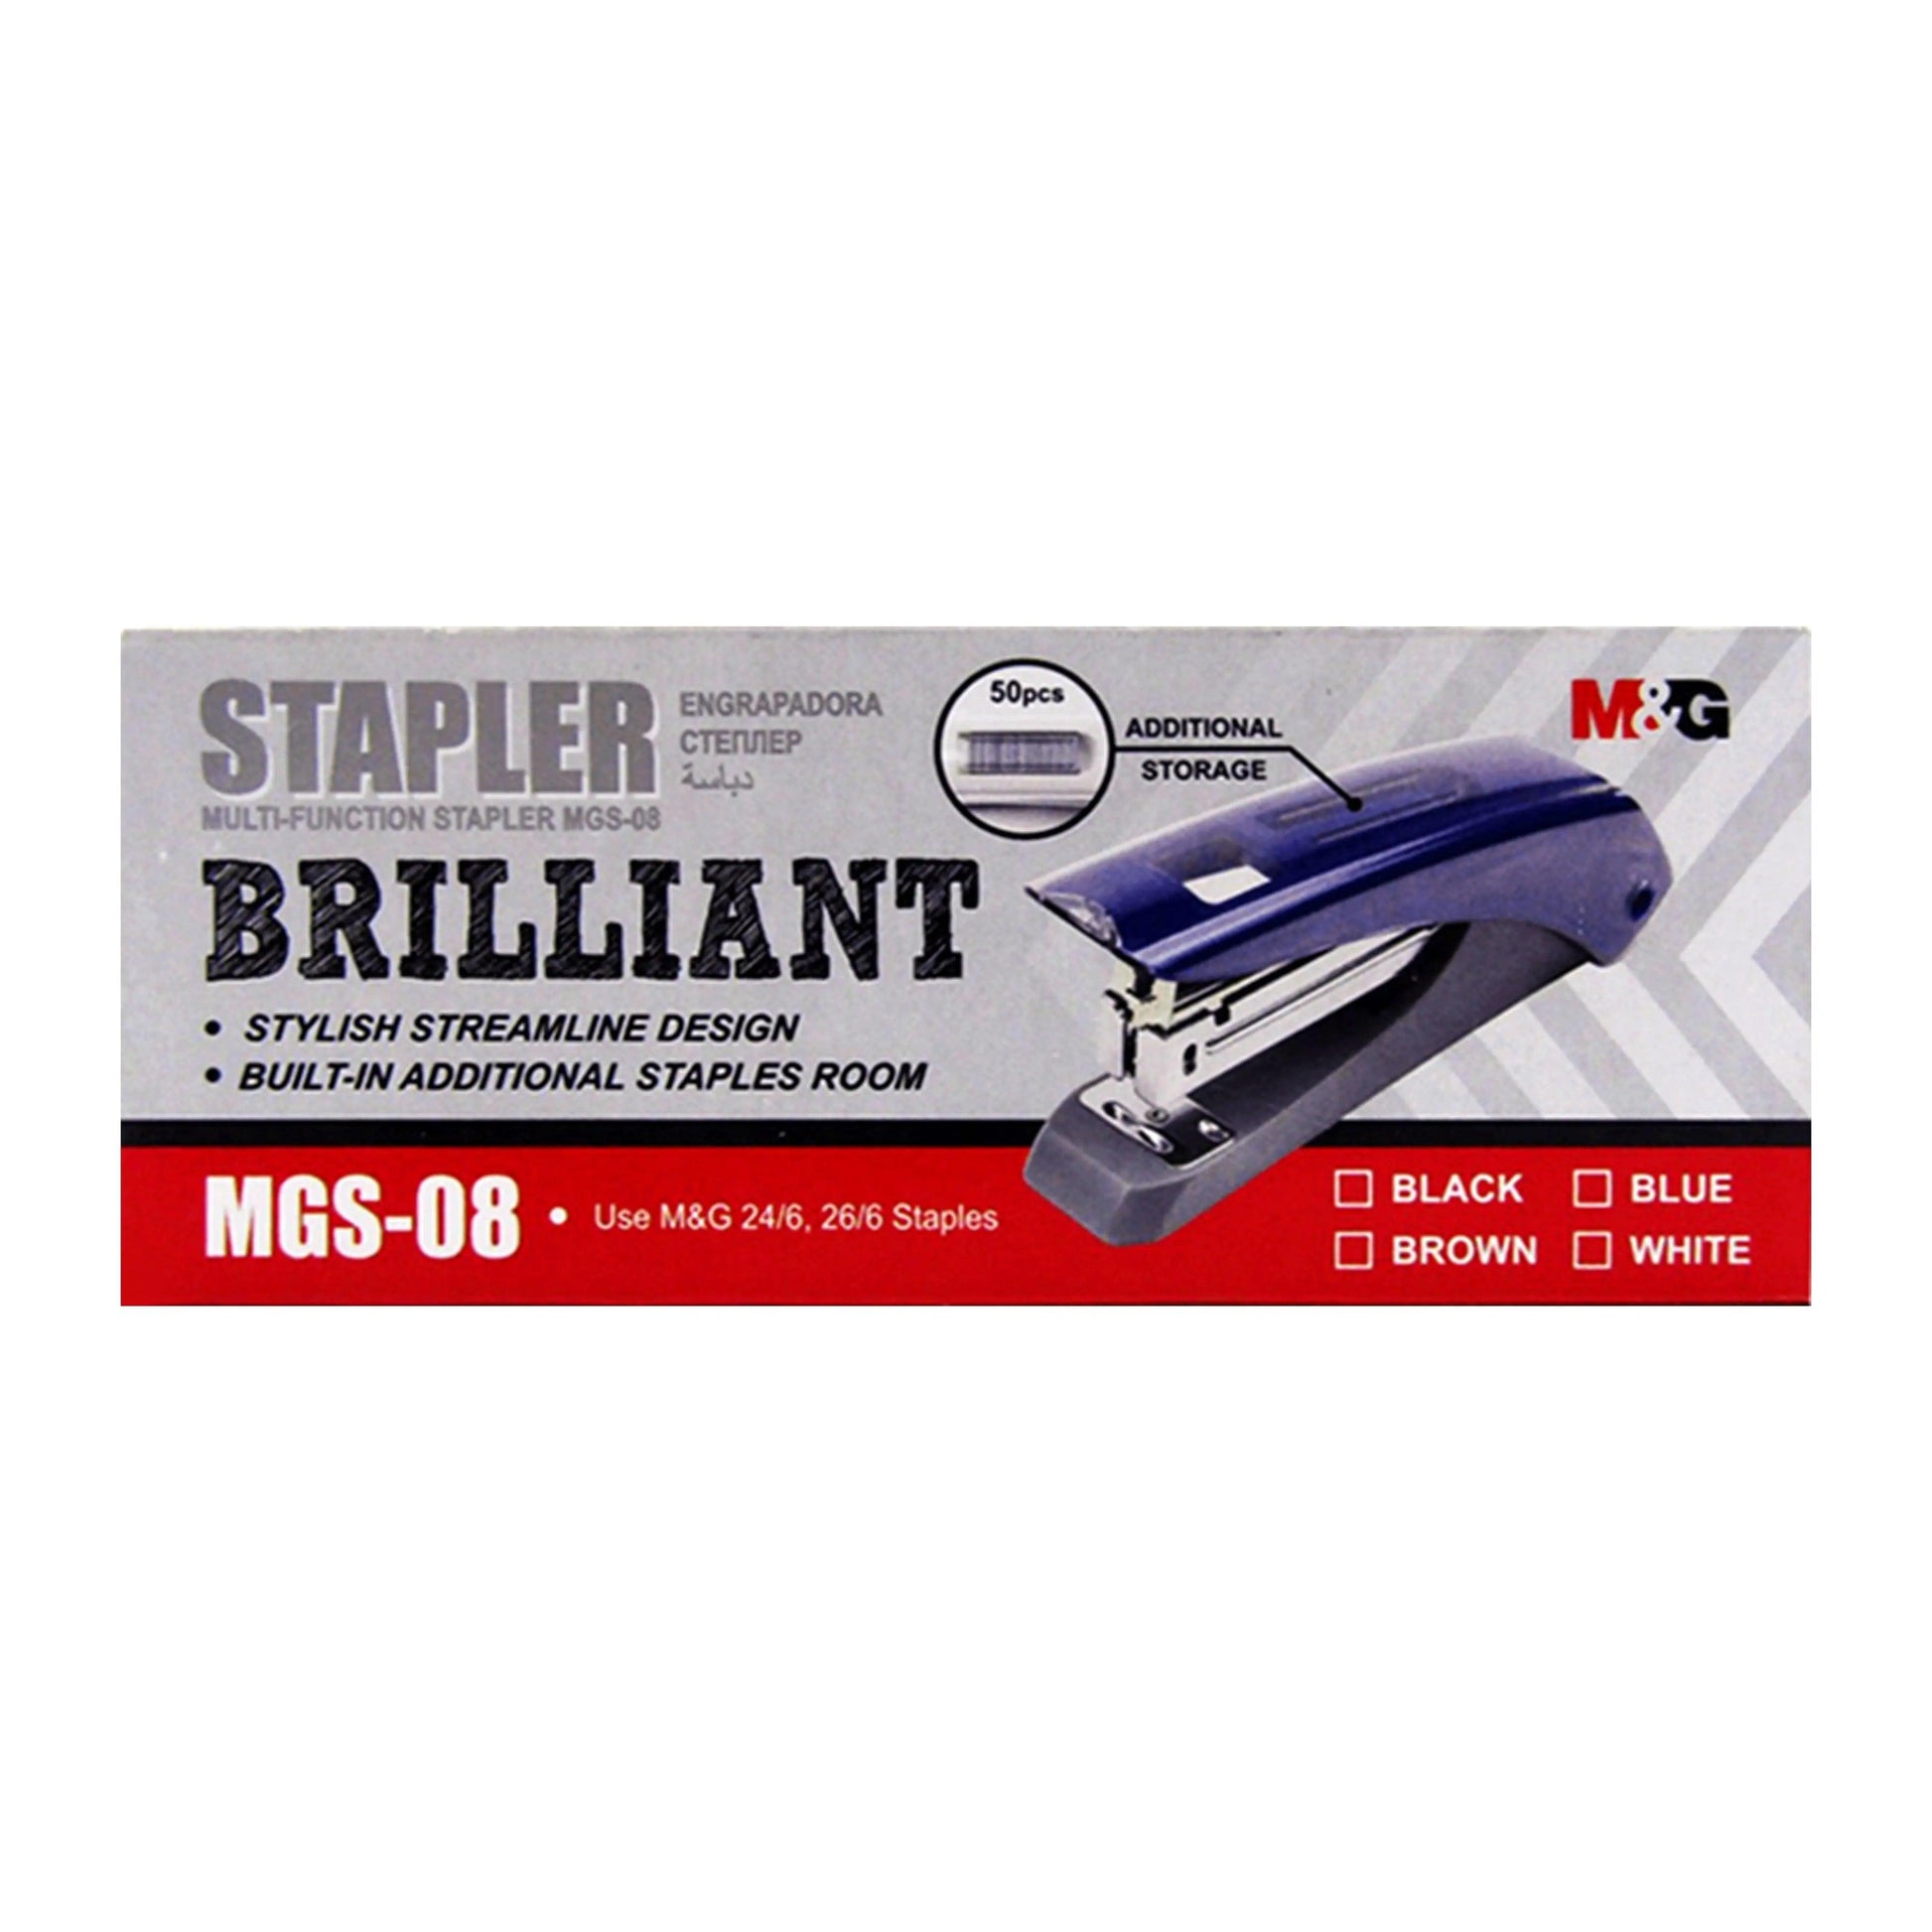 M&G Stapler 24/6 Brilliant M&G